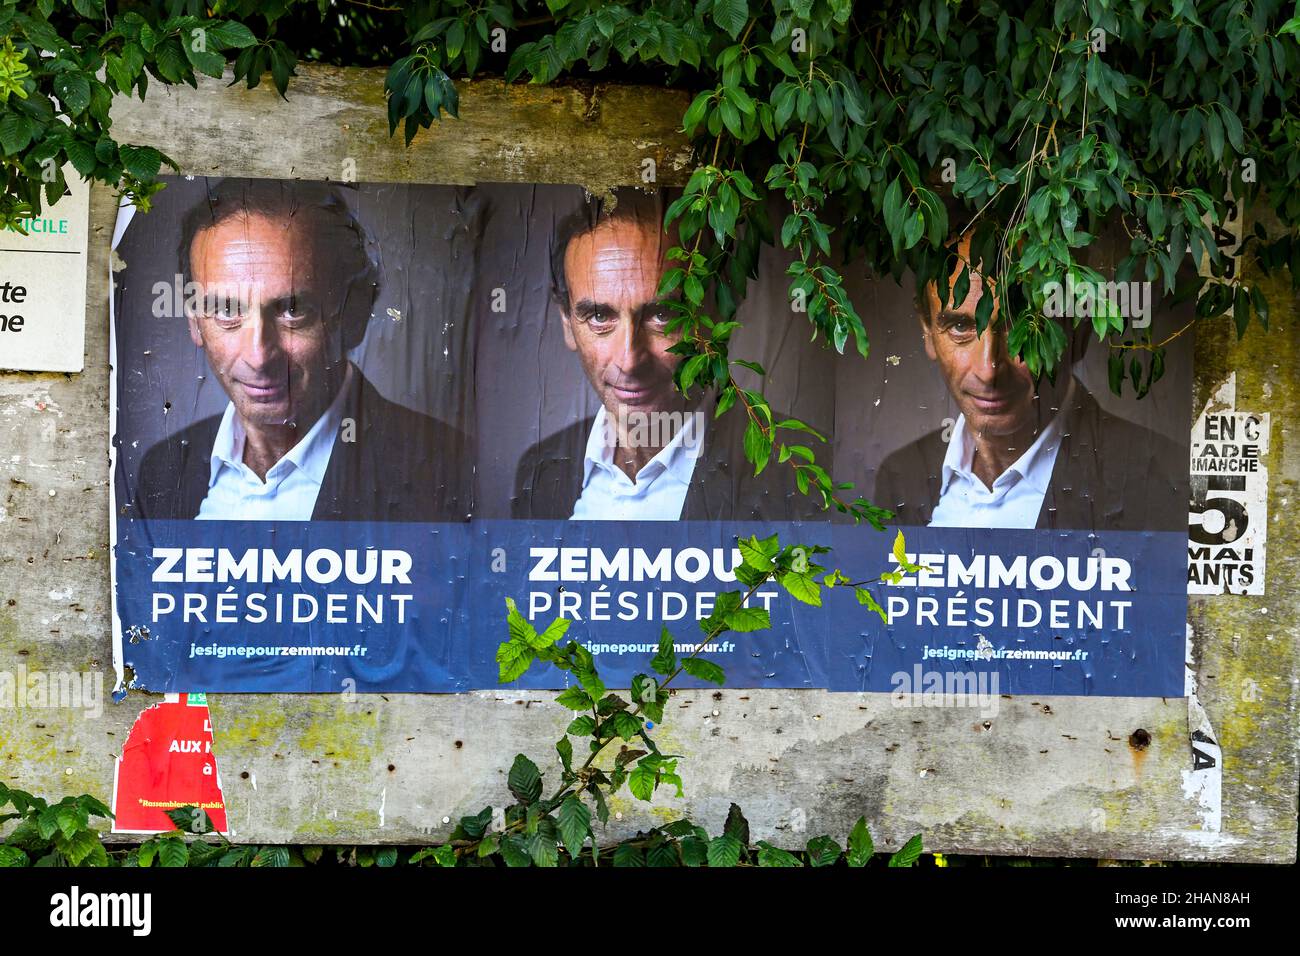 Septembre 2021, affiche en faveur du commentateur français d'extrême-droite Eric Zemmour, candidat probable à l'élection présidentielle française de 2022.Poste Banque D'Images